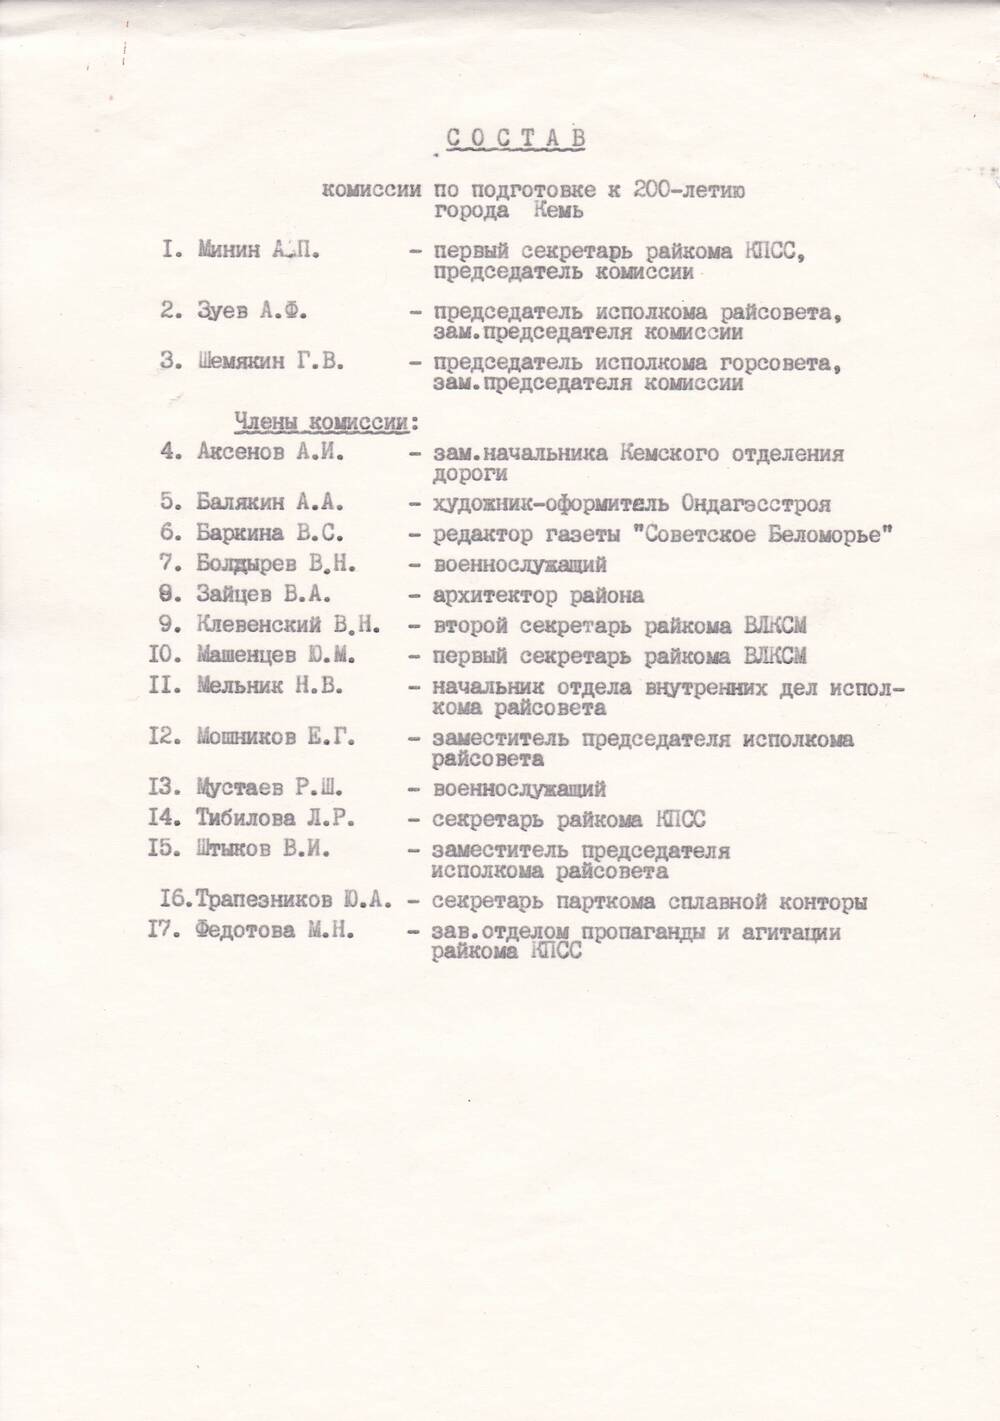 Документ Состав комиссии по подготовке к 200-летию Кеми